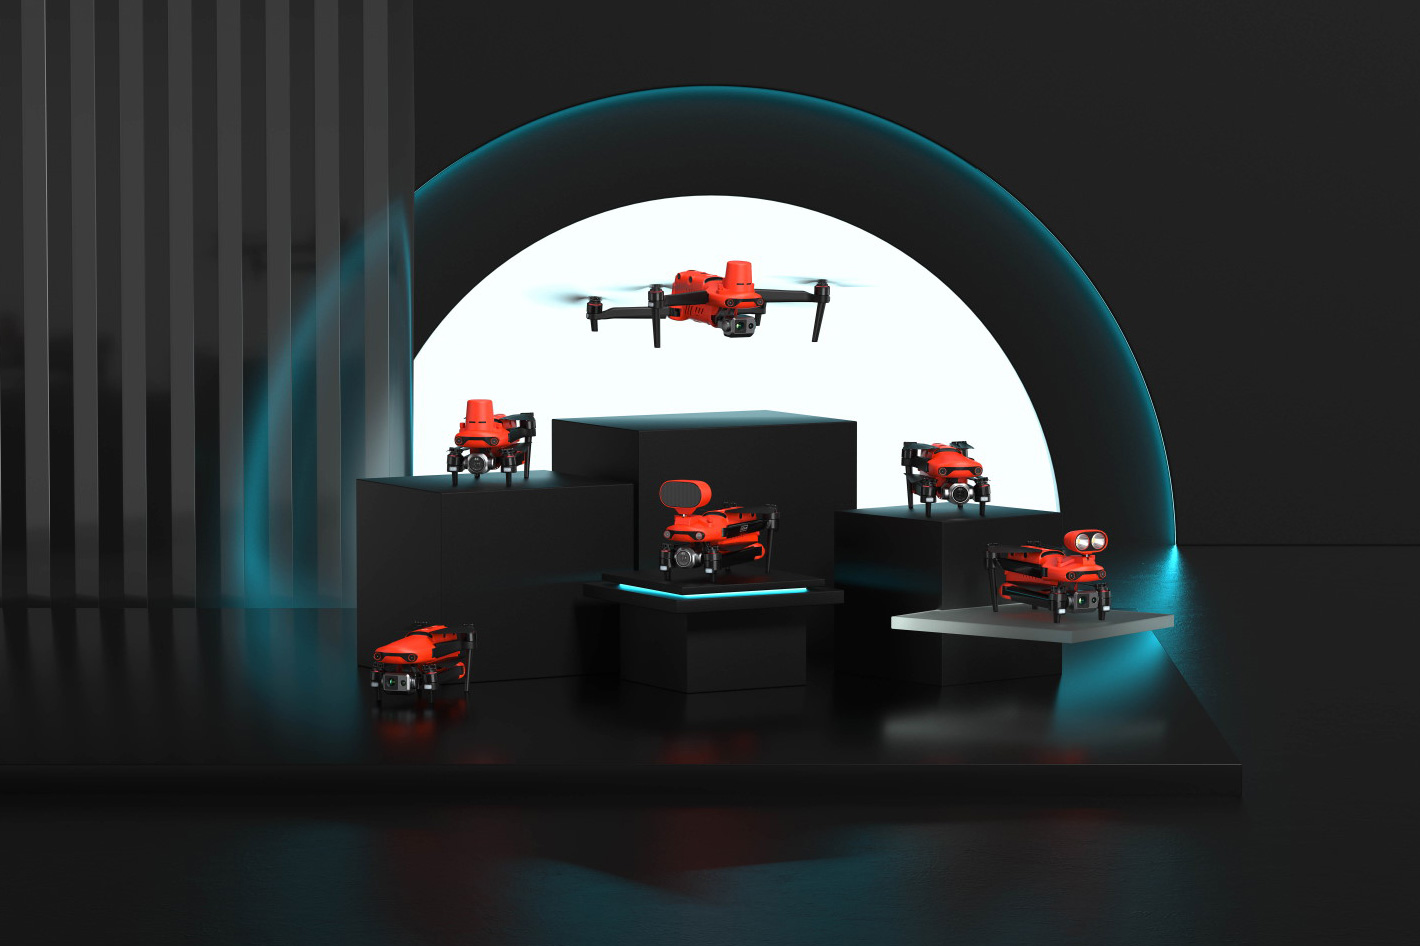 Autel Robotics shows new drones at IFA 2022